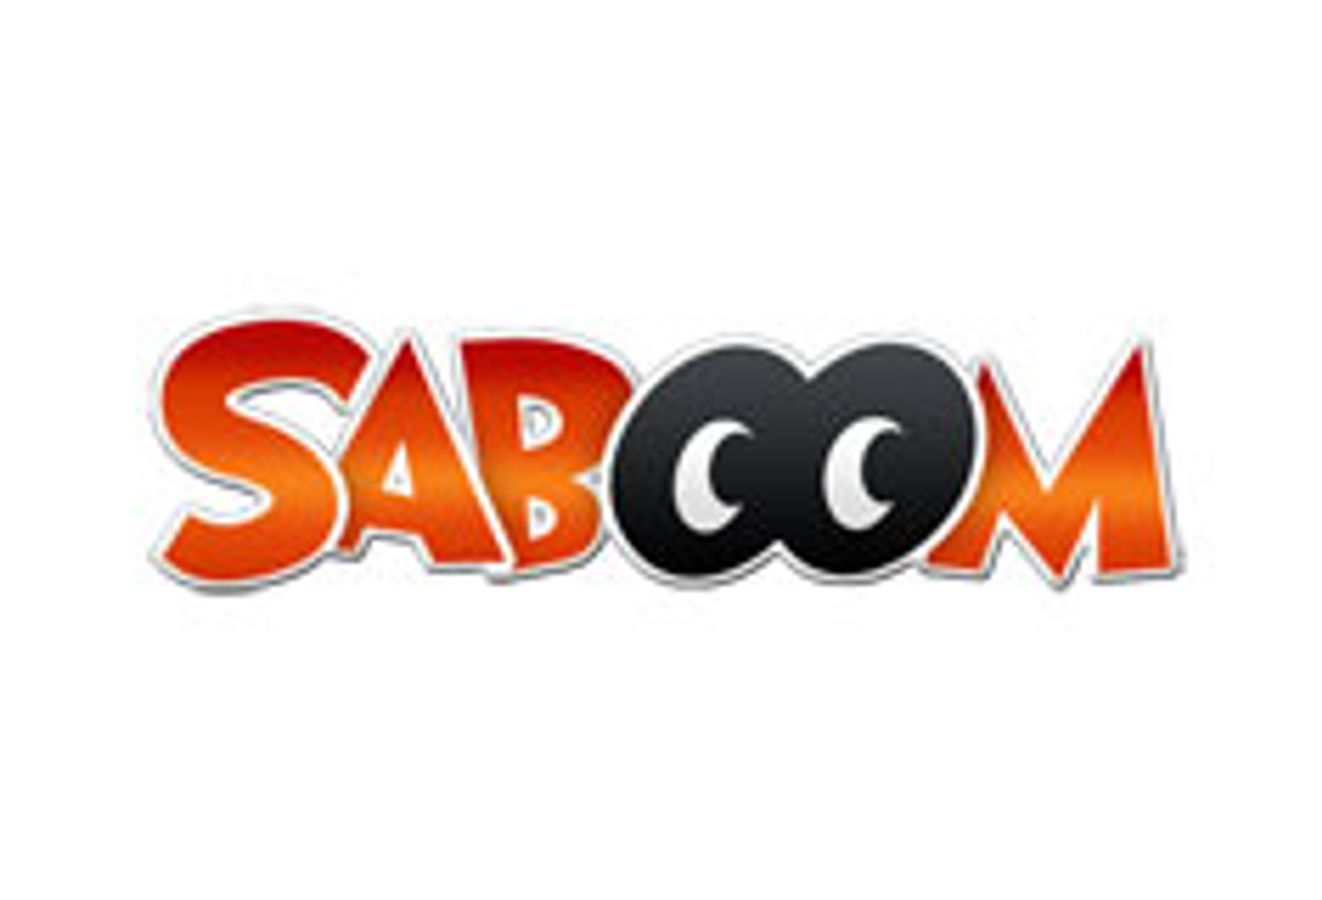 Saboom.com